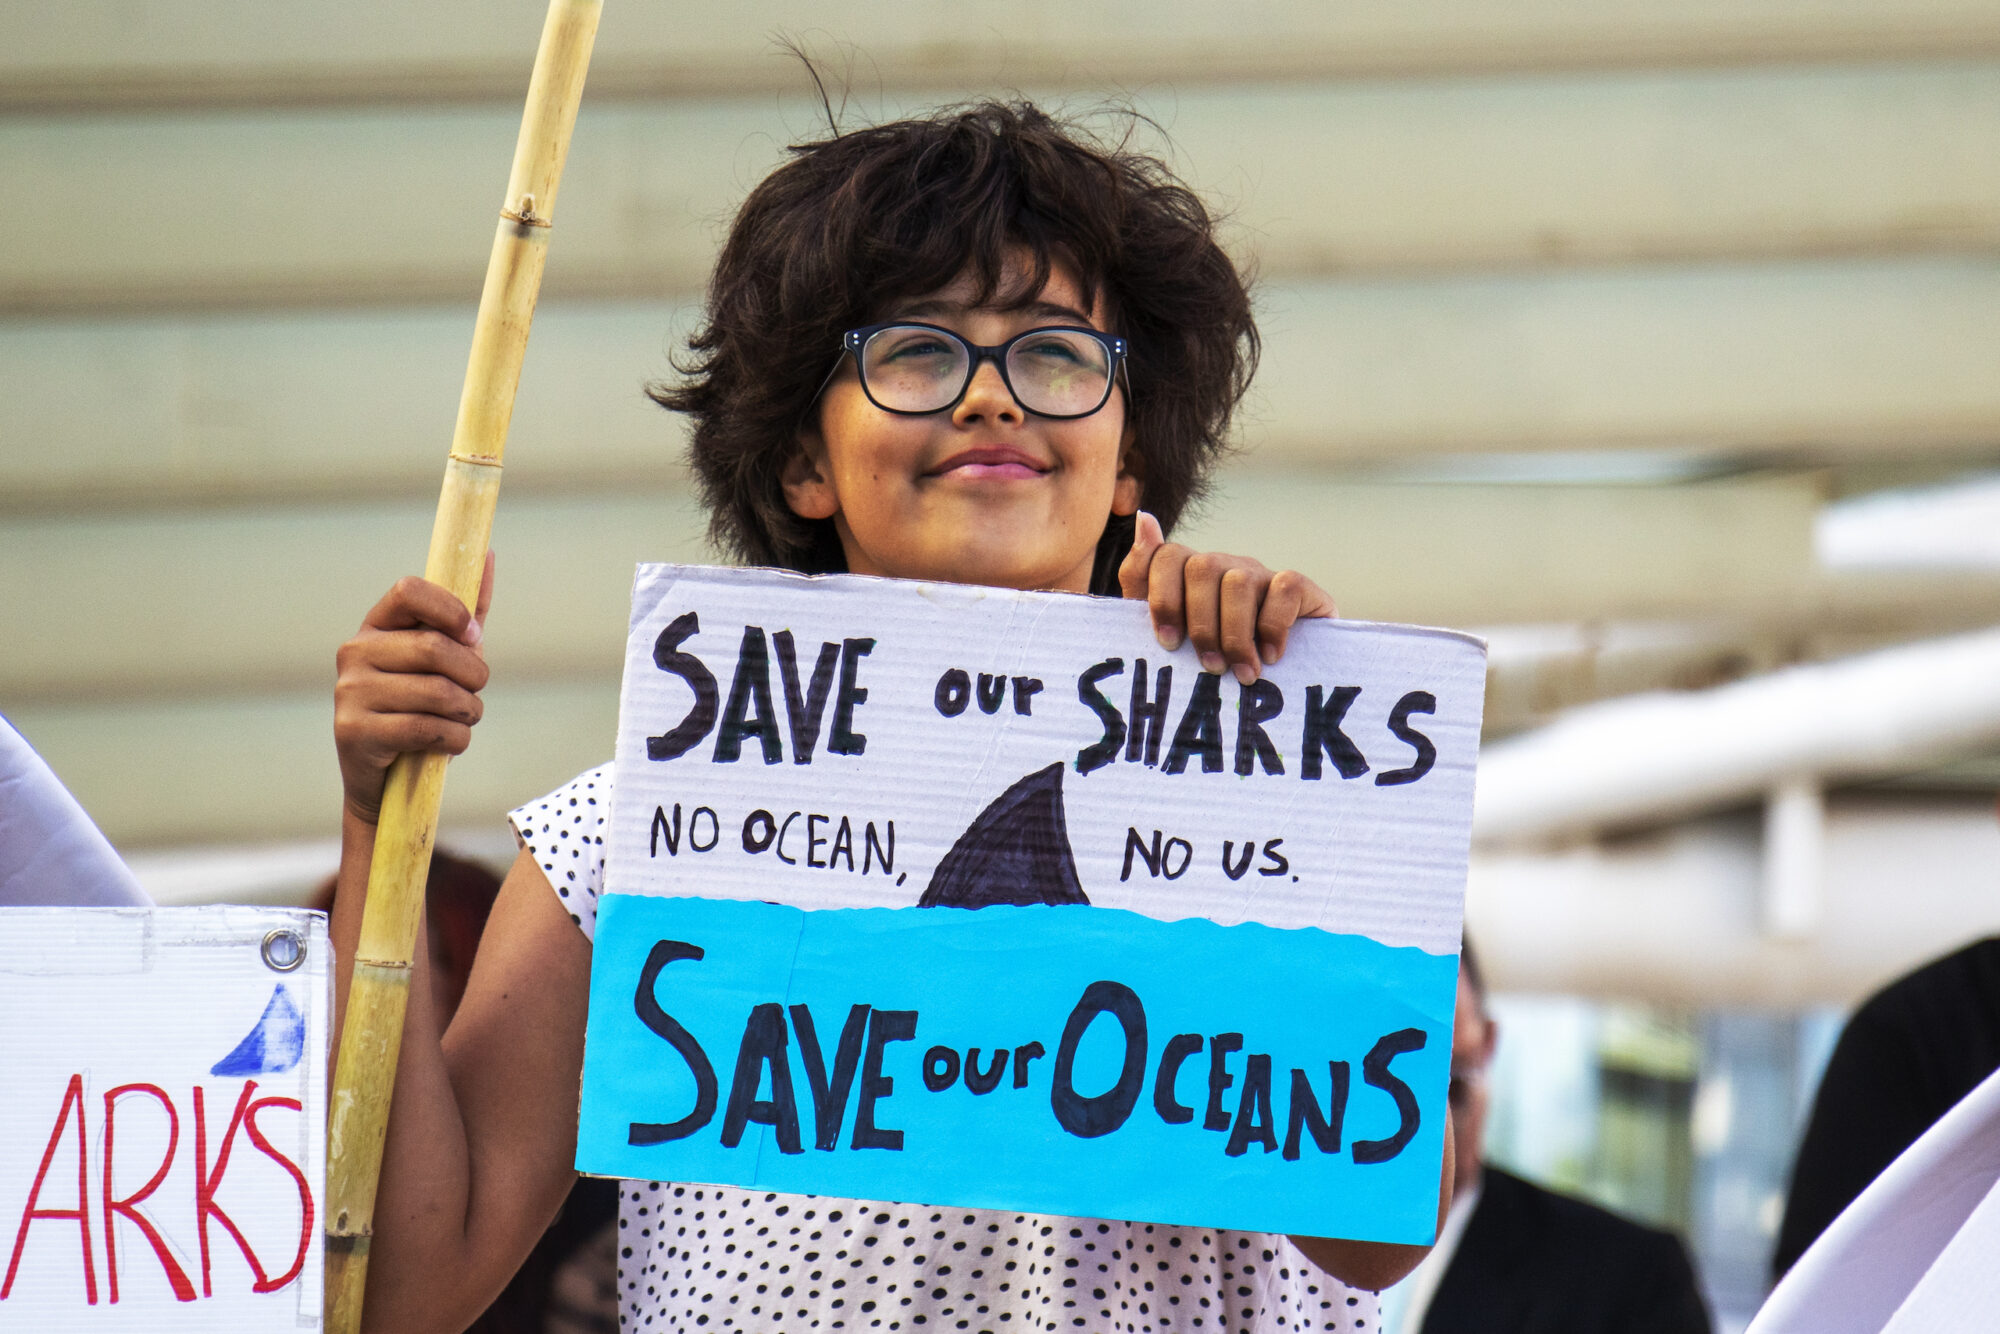 Uma garota com uma placa dizendo "save our sharks, save our oceans" (salve nossos tubarões, salve nossos oceanos")